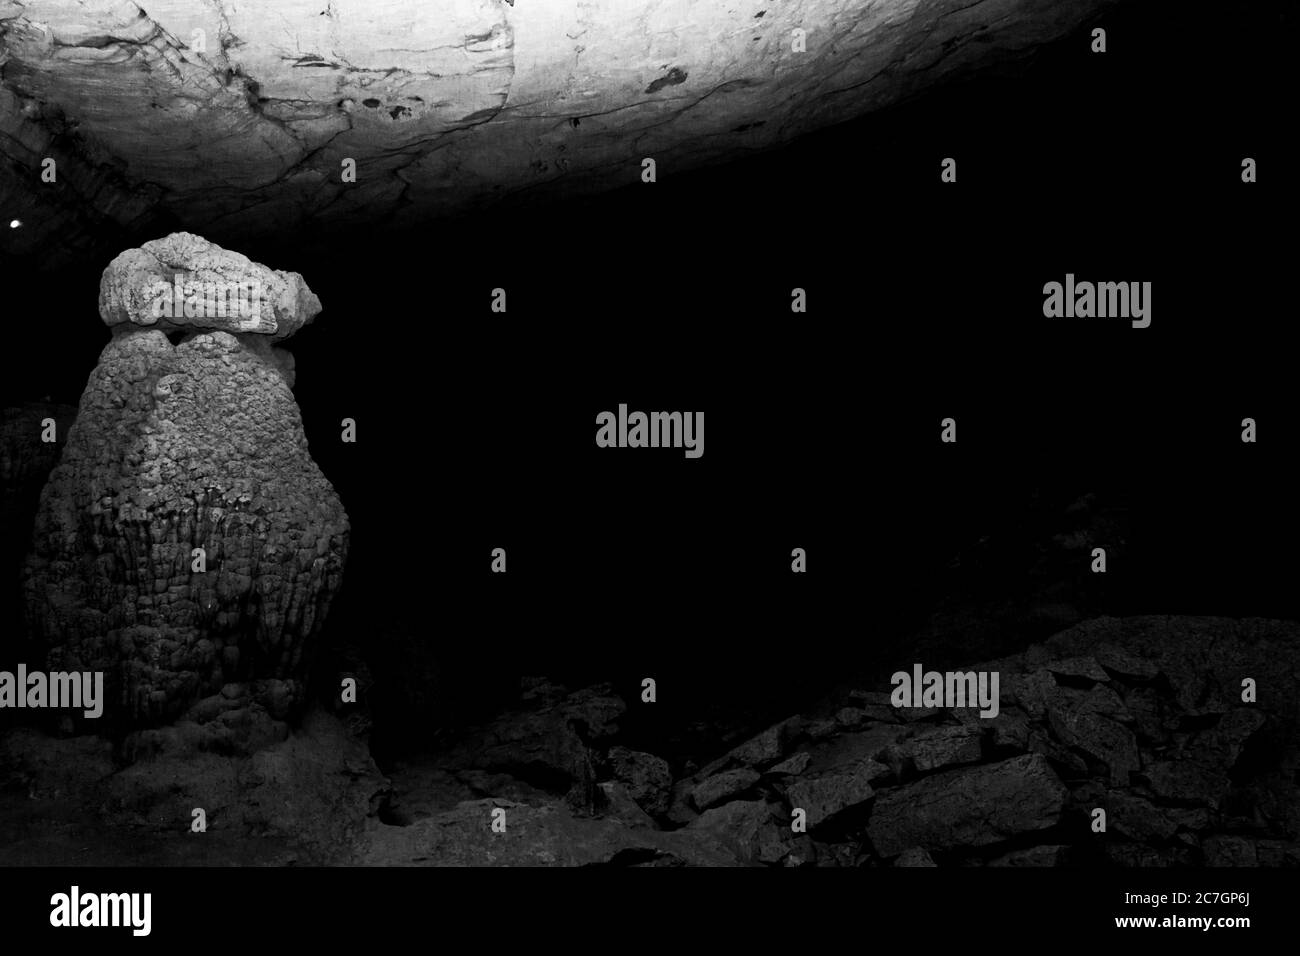 Ancient Bat cave in the Ankarana Special Reserve, Ankarana, Madagascar Stock Photo